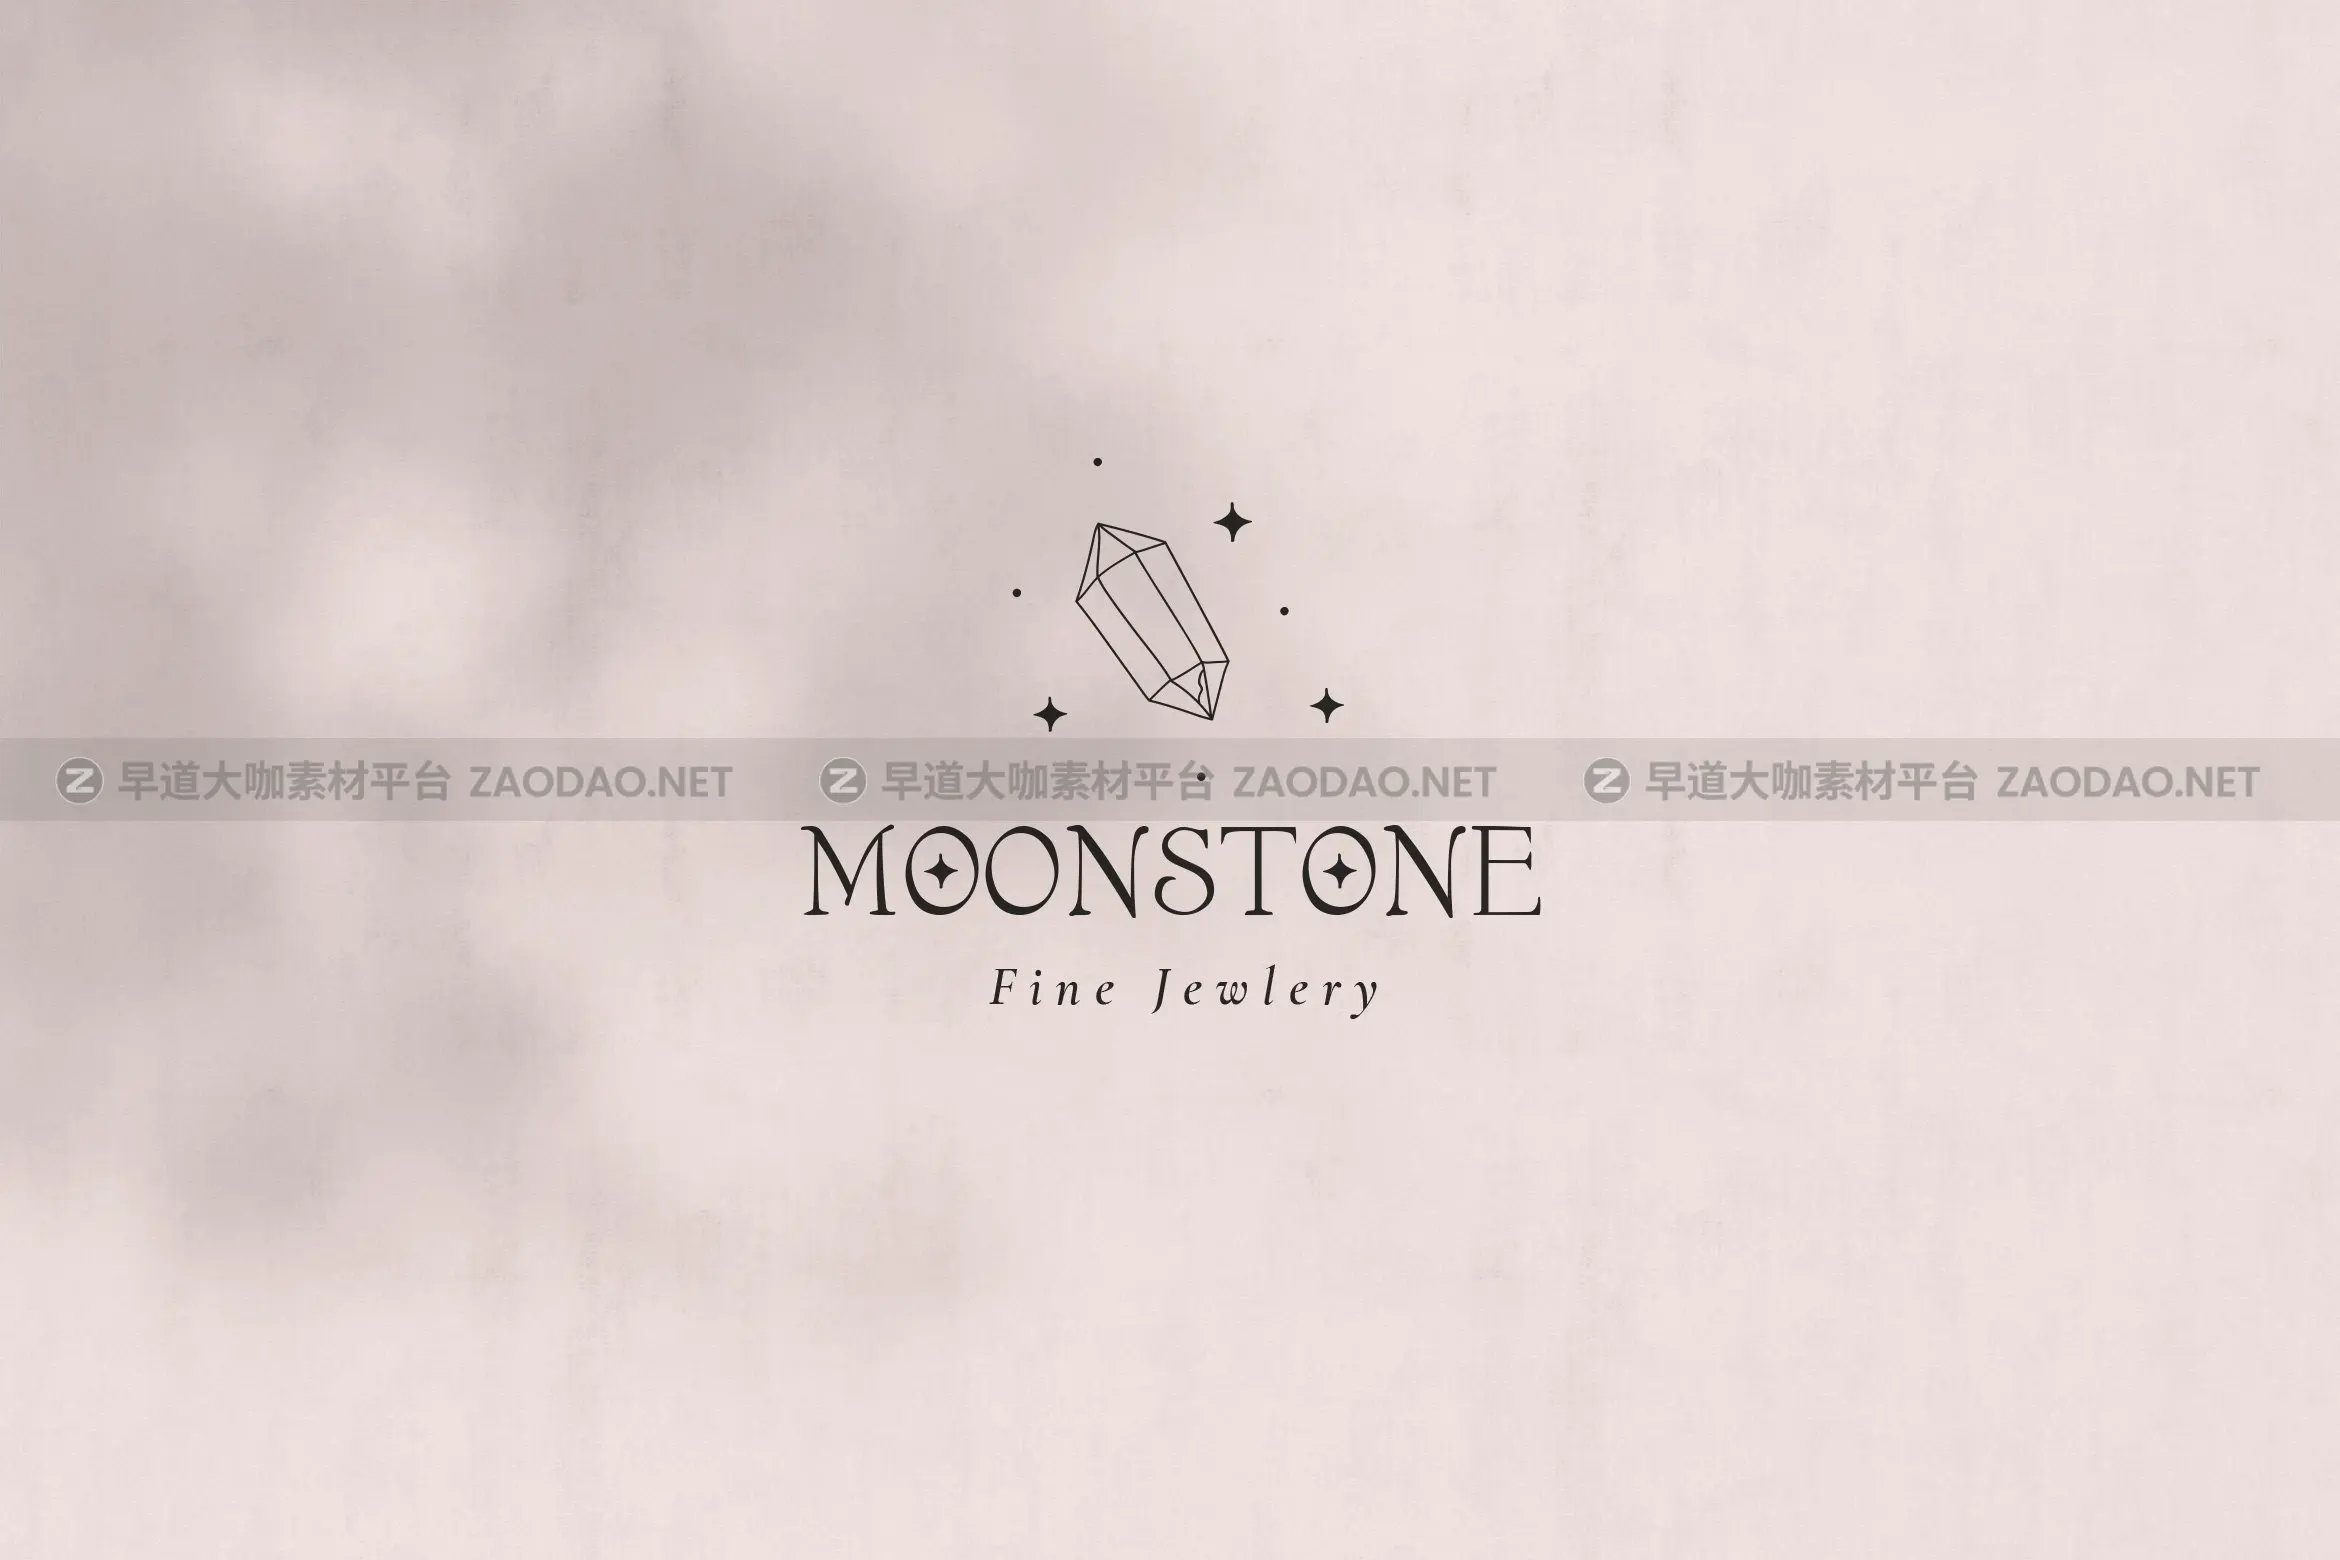 时尚优雅奢华珠宝瑜伽摄影花店徽标Logo设计AI矢量素材 Moon Stone Premade Brand Logo Design插图1